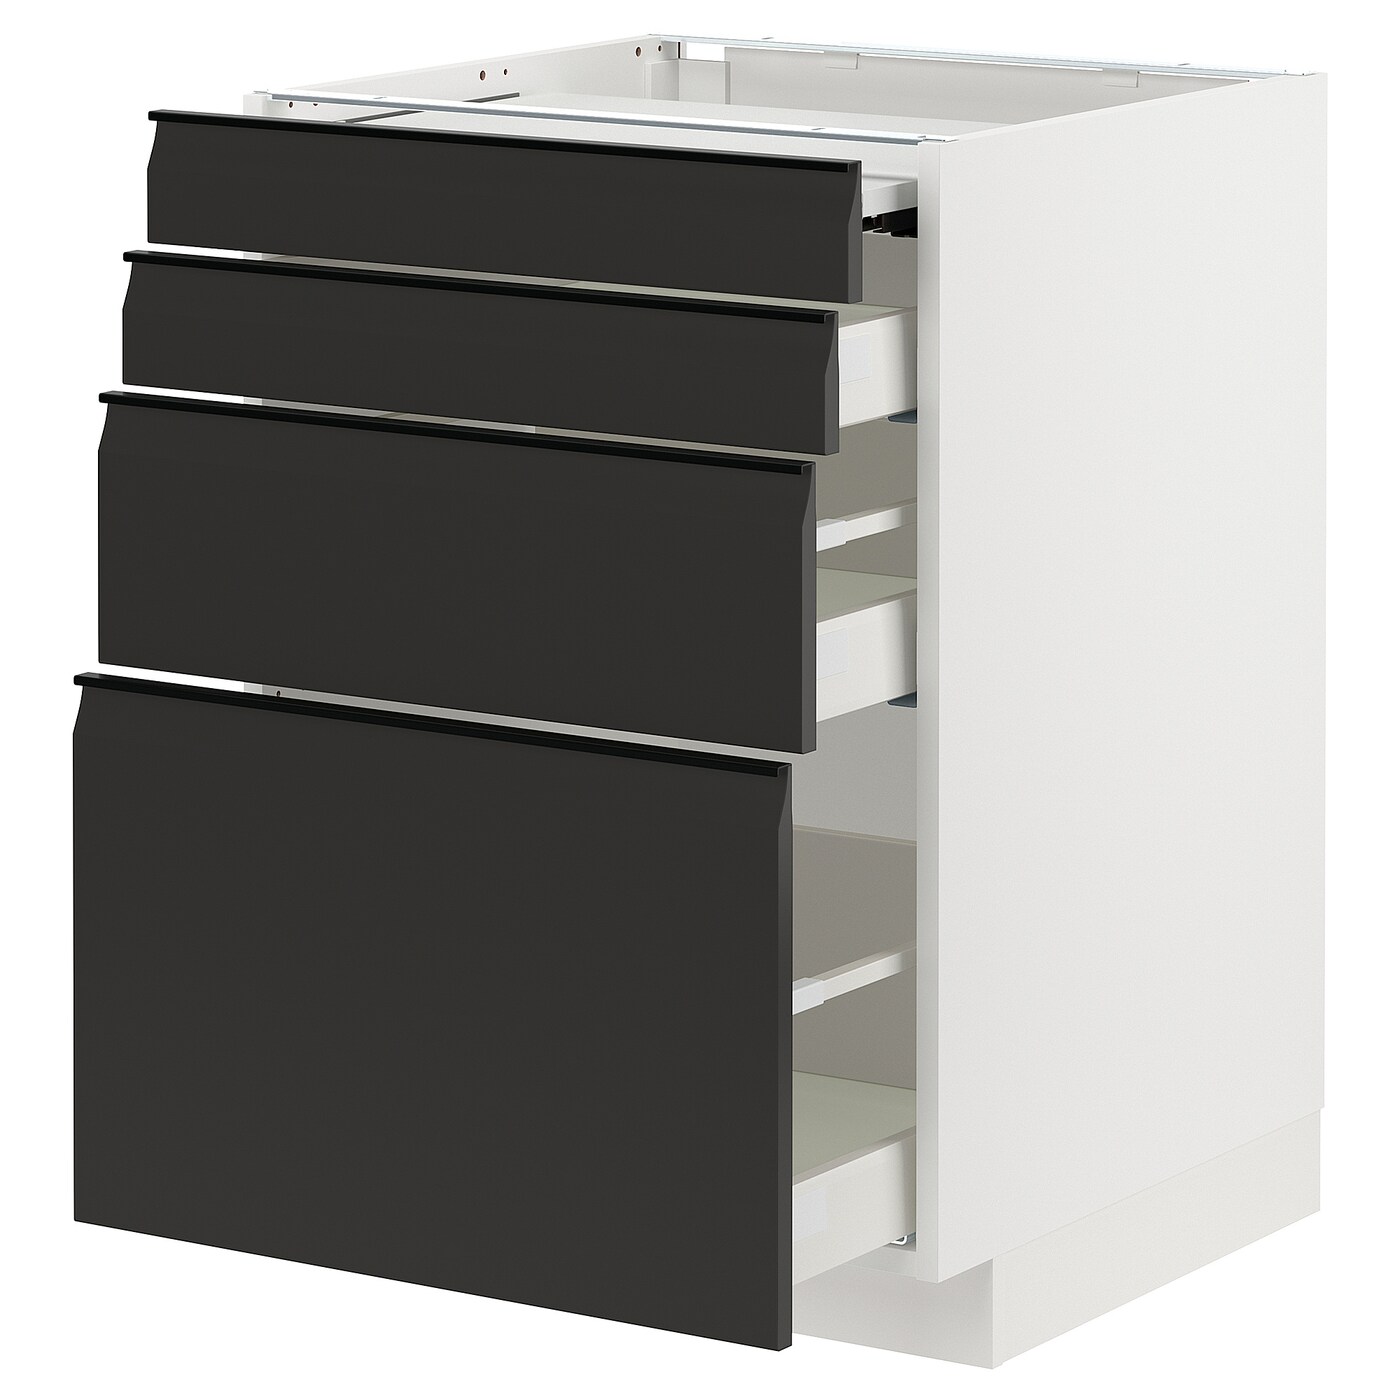 Напольный шкаф - IKEA METOD MAXIMERA, 88x62x60см, белый/черный, МЕТОД МАКСИМЕРА ИКЕА